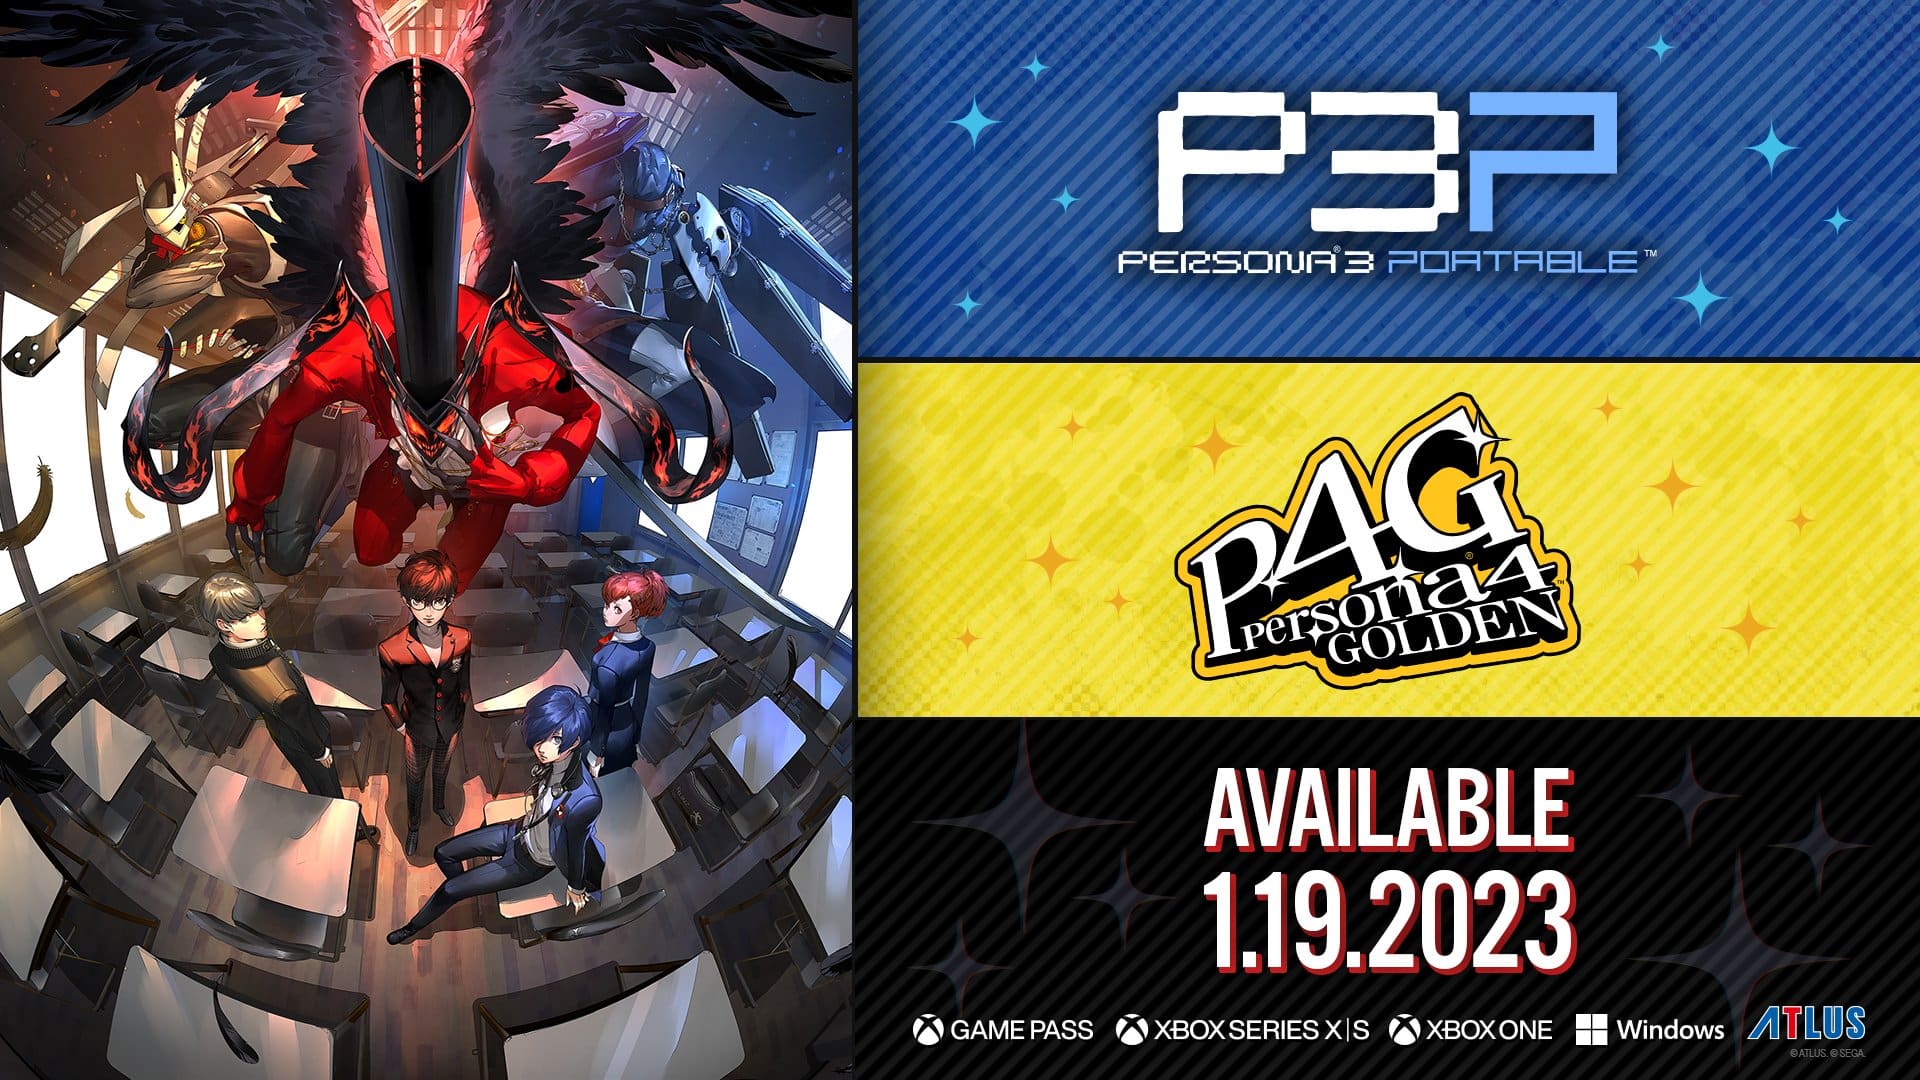 Persona 3 Portable y Persona 4 Golden se lanzarán el 19 de enero de 2023